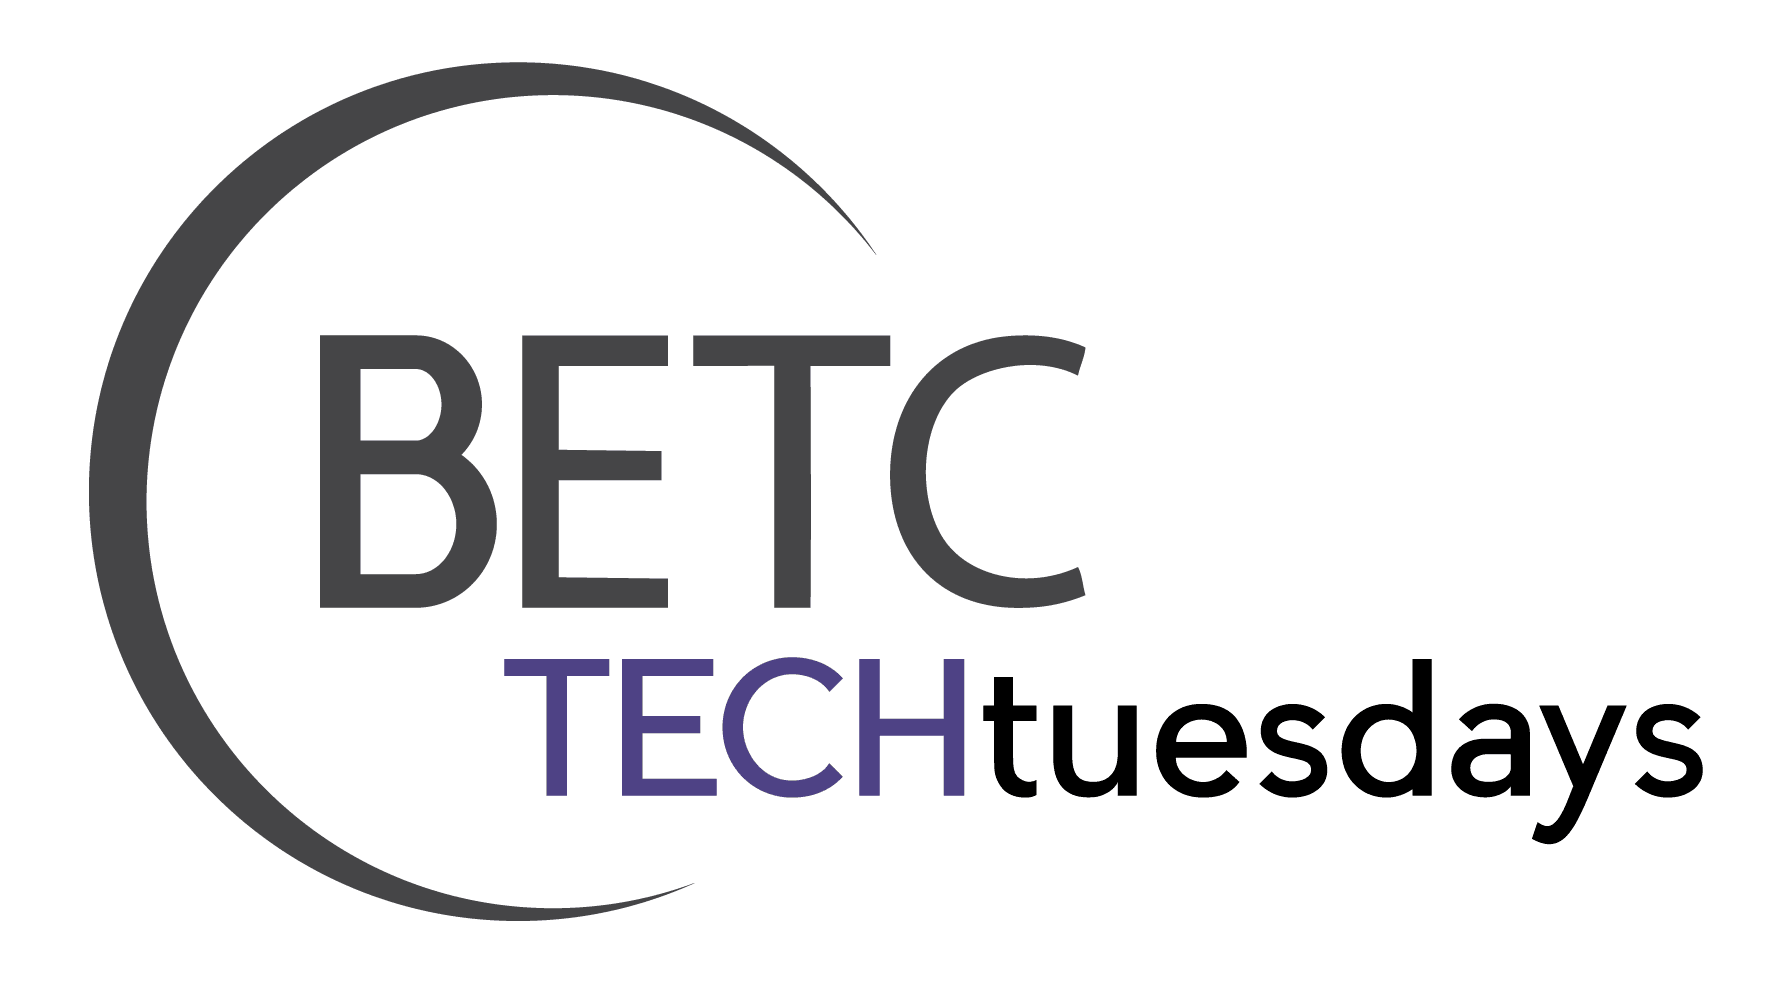 BETC TECHtuesdays Logo.png